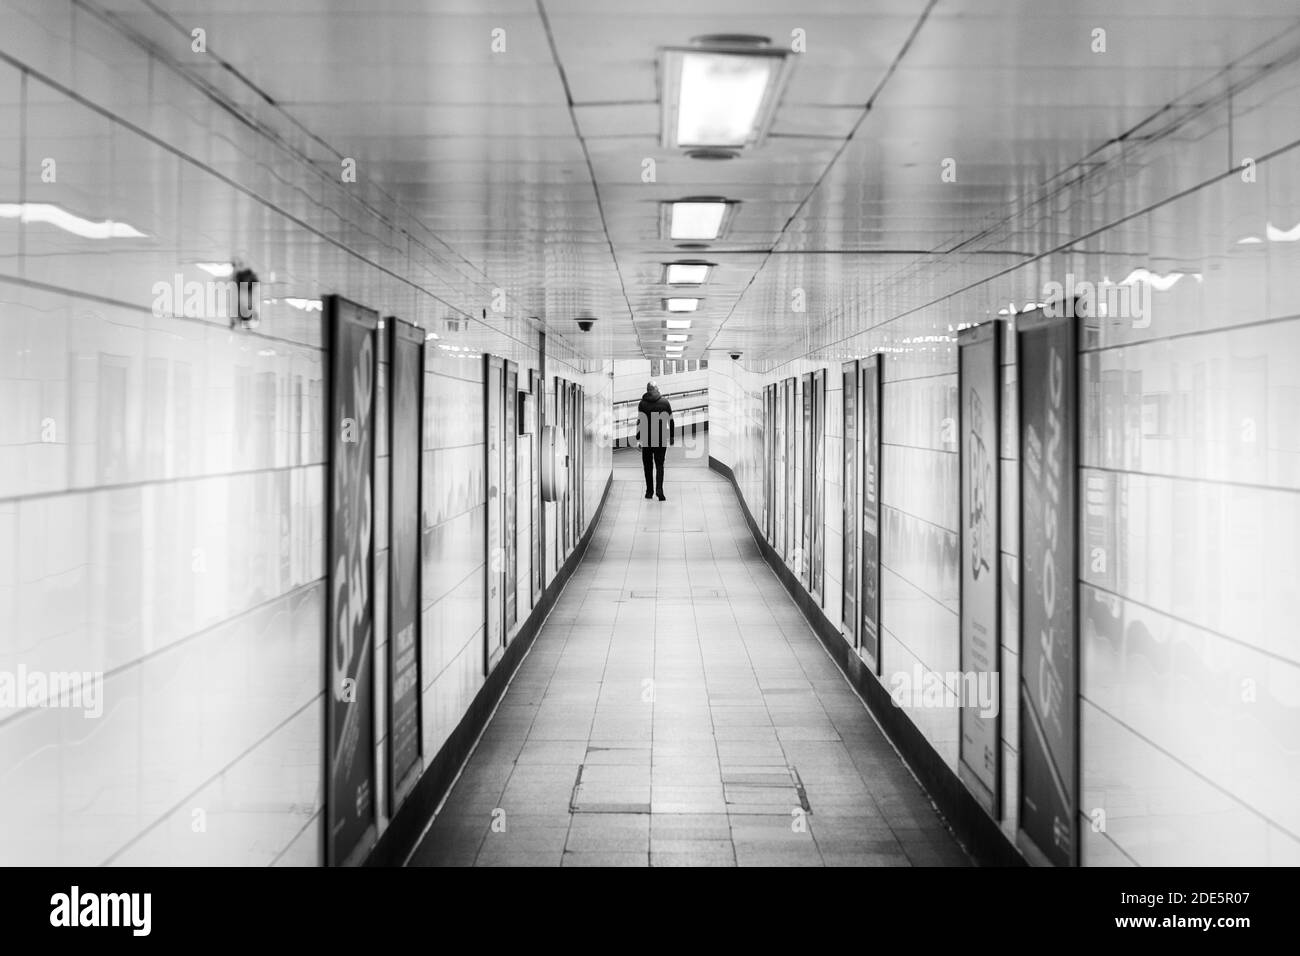 La station de métro de Londres, calme et vide, est verrouillée en cas de pandémie de coronavirus Covid-19, avec une seule personne dans les transports en commun lorsque les trains ont été réduits pendant l'interdiction de voyager Banque D'Images